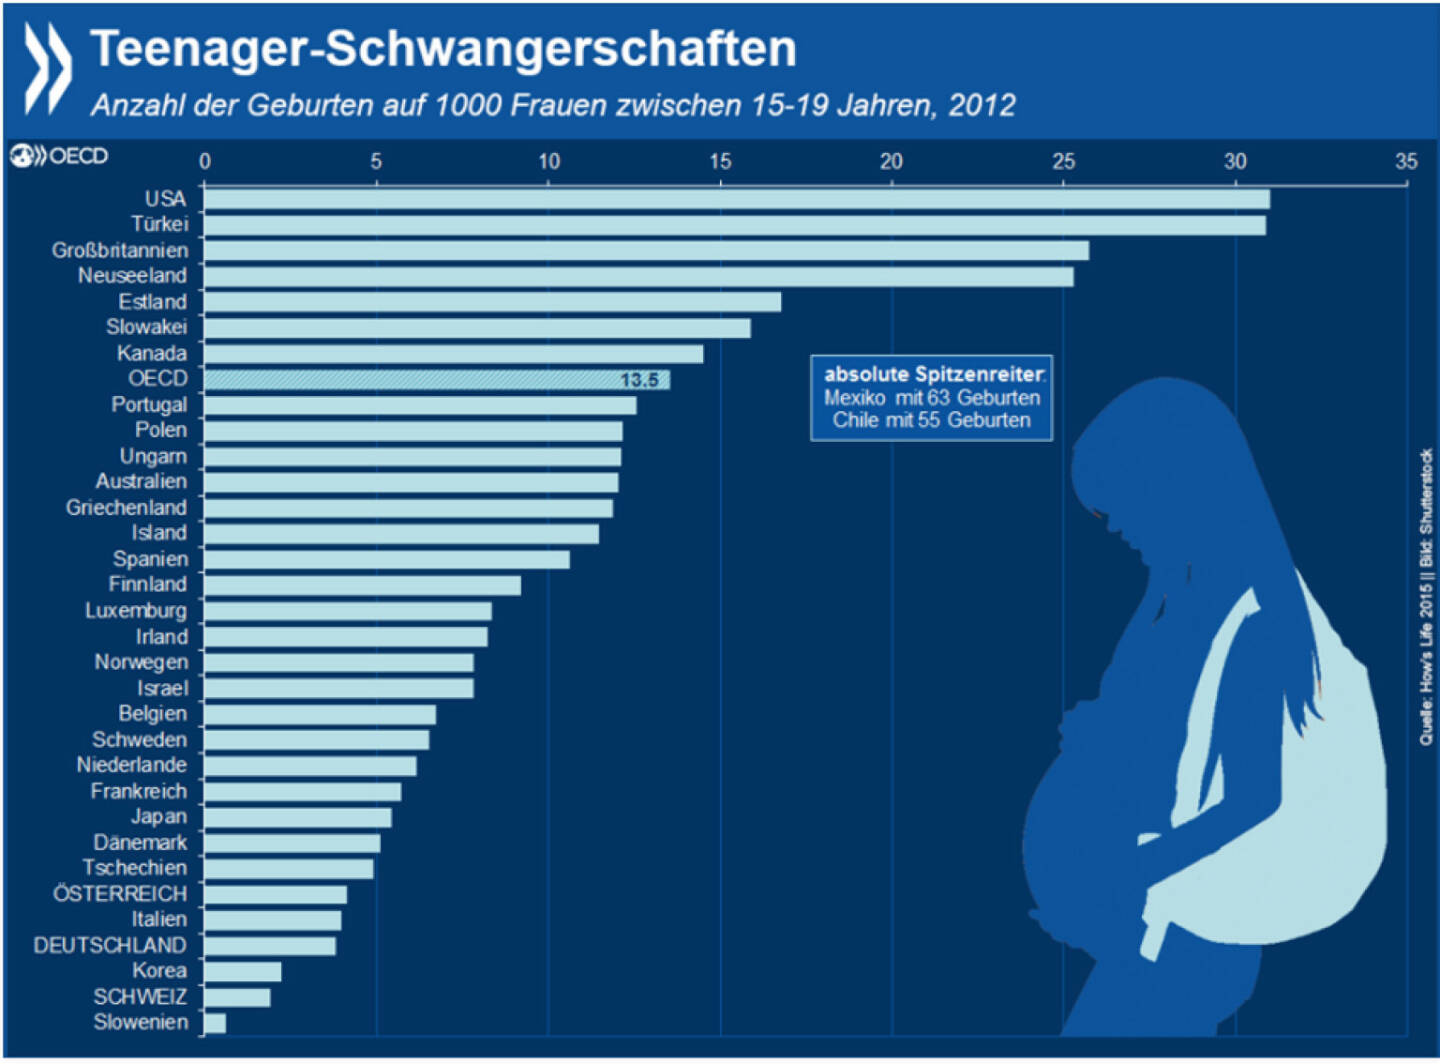 Reif für ein Kind? Teenagerschwangerschaften gehen in der OECD in den meisten Ländern zurück. Es gibt aber immer noch Länder, in denen relativ viele junge Frauen Mütter werden. In Mexiko und Chile ist das Phänomen am weitesten verbreitet, aber auch die USA, Großbritannien und Neuseeland liegen weit über dem OECD-Schnitt. http://bit.ly/1K8p4rT